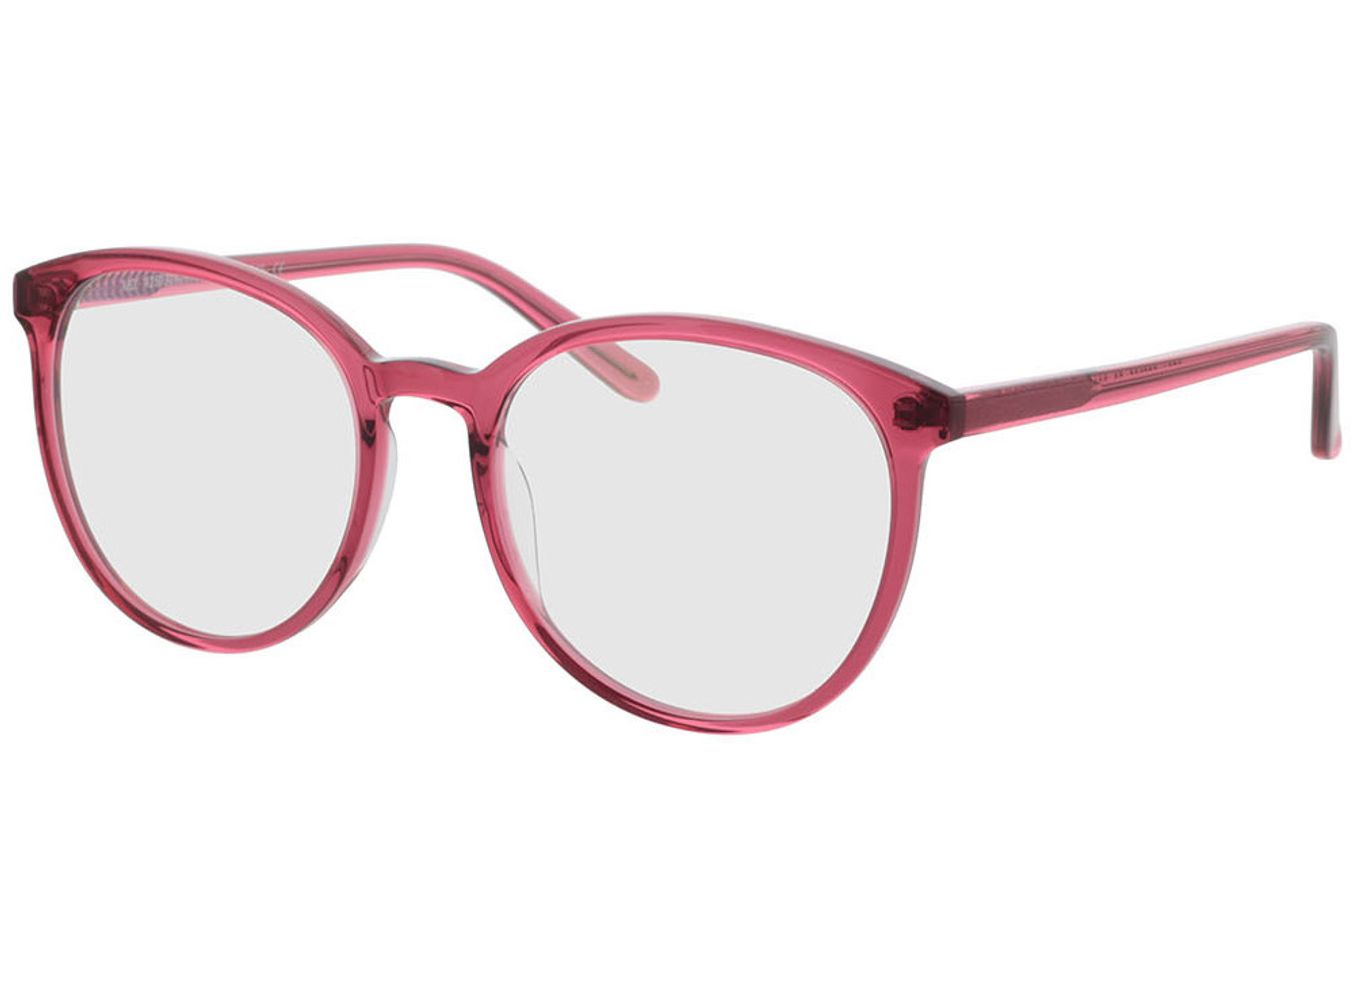 New York - pink Gleitsichtbrille, Vollrand, Rund von Brille24 Collection